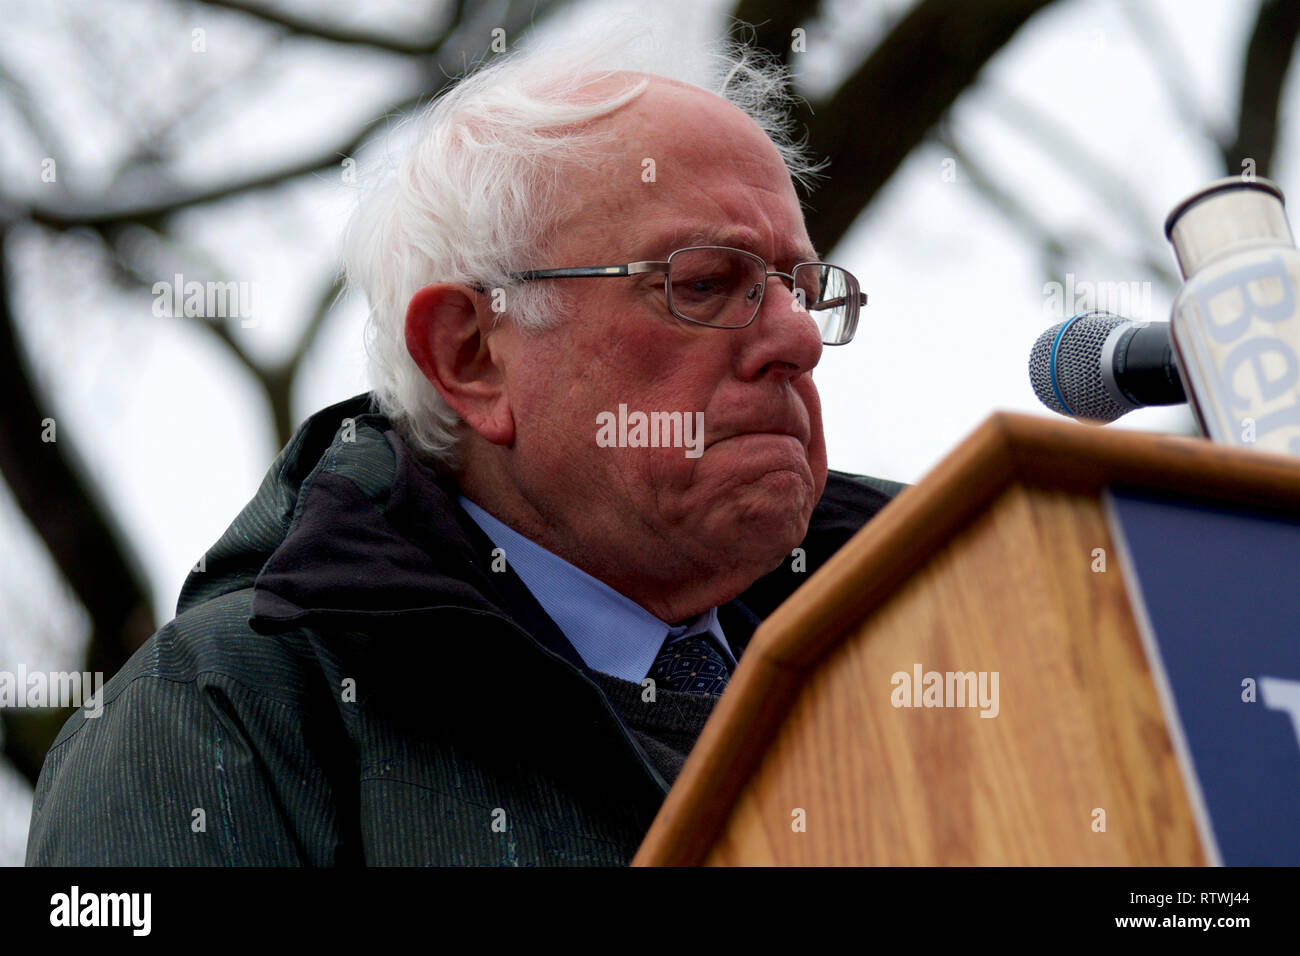 New York, NY, USA. 2 mars, 2019. Bernie Sanders (I-VT) lance sa campagne pour les élections présidentielles américaines de 2020 sur un ticket démocratique lors d'un rassemblement au Brooklyn College, à Brooklyn, New York le 2 mars 2019. Credit : OOgImages/Alamy Live News Banque D'Images